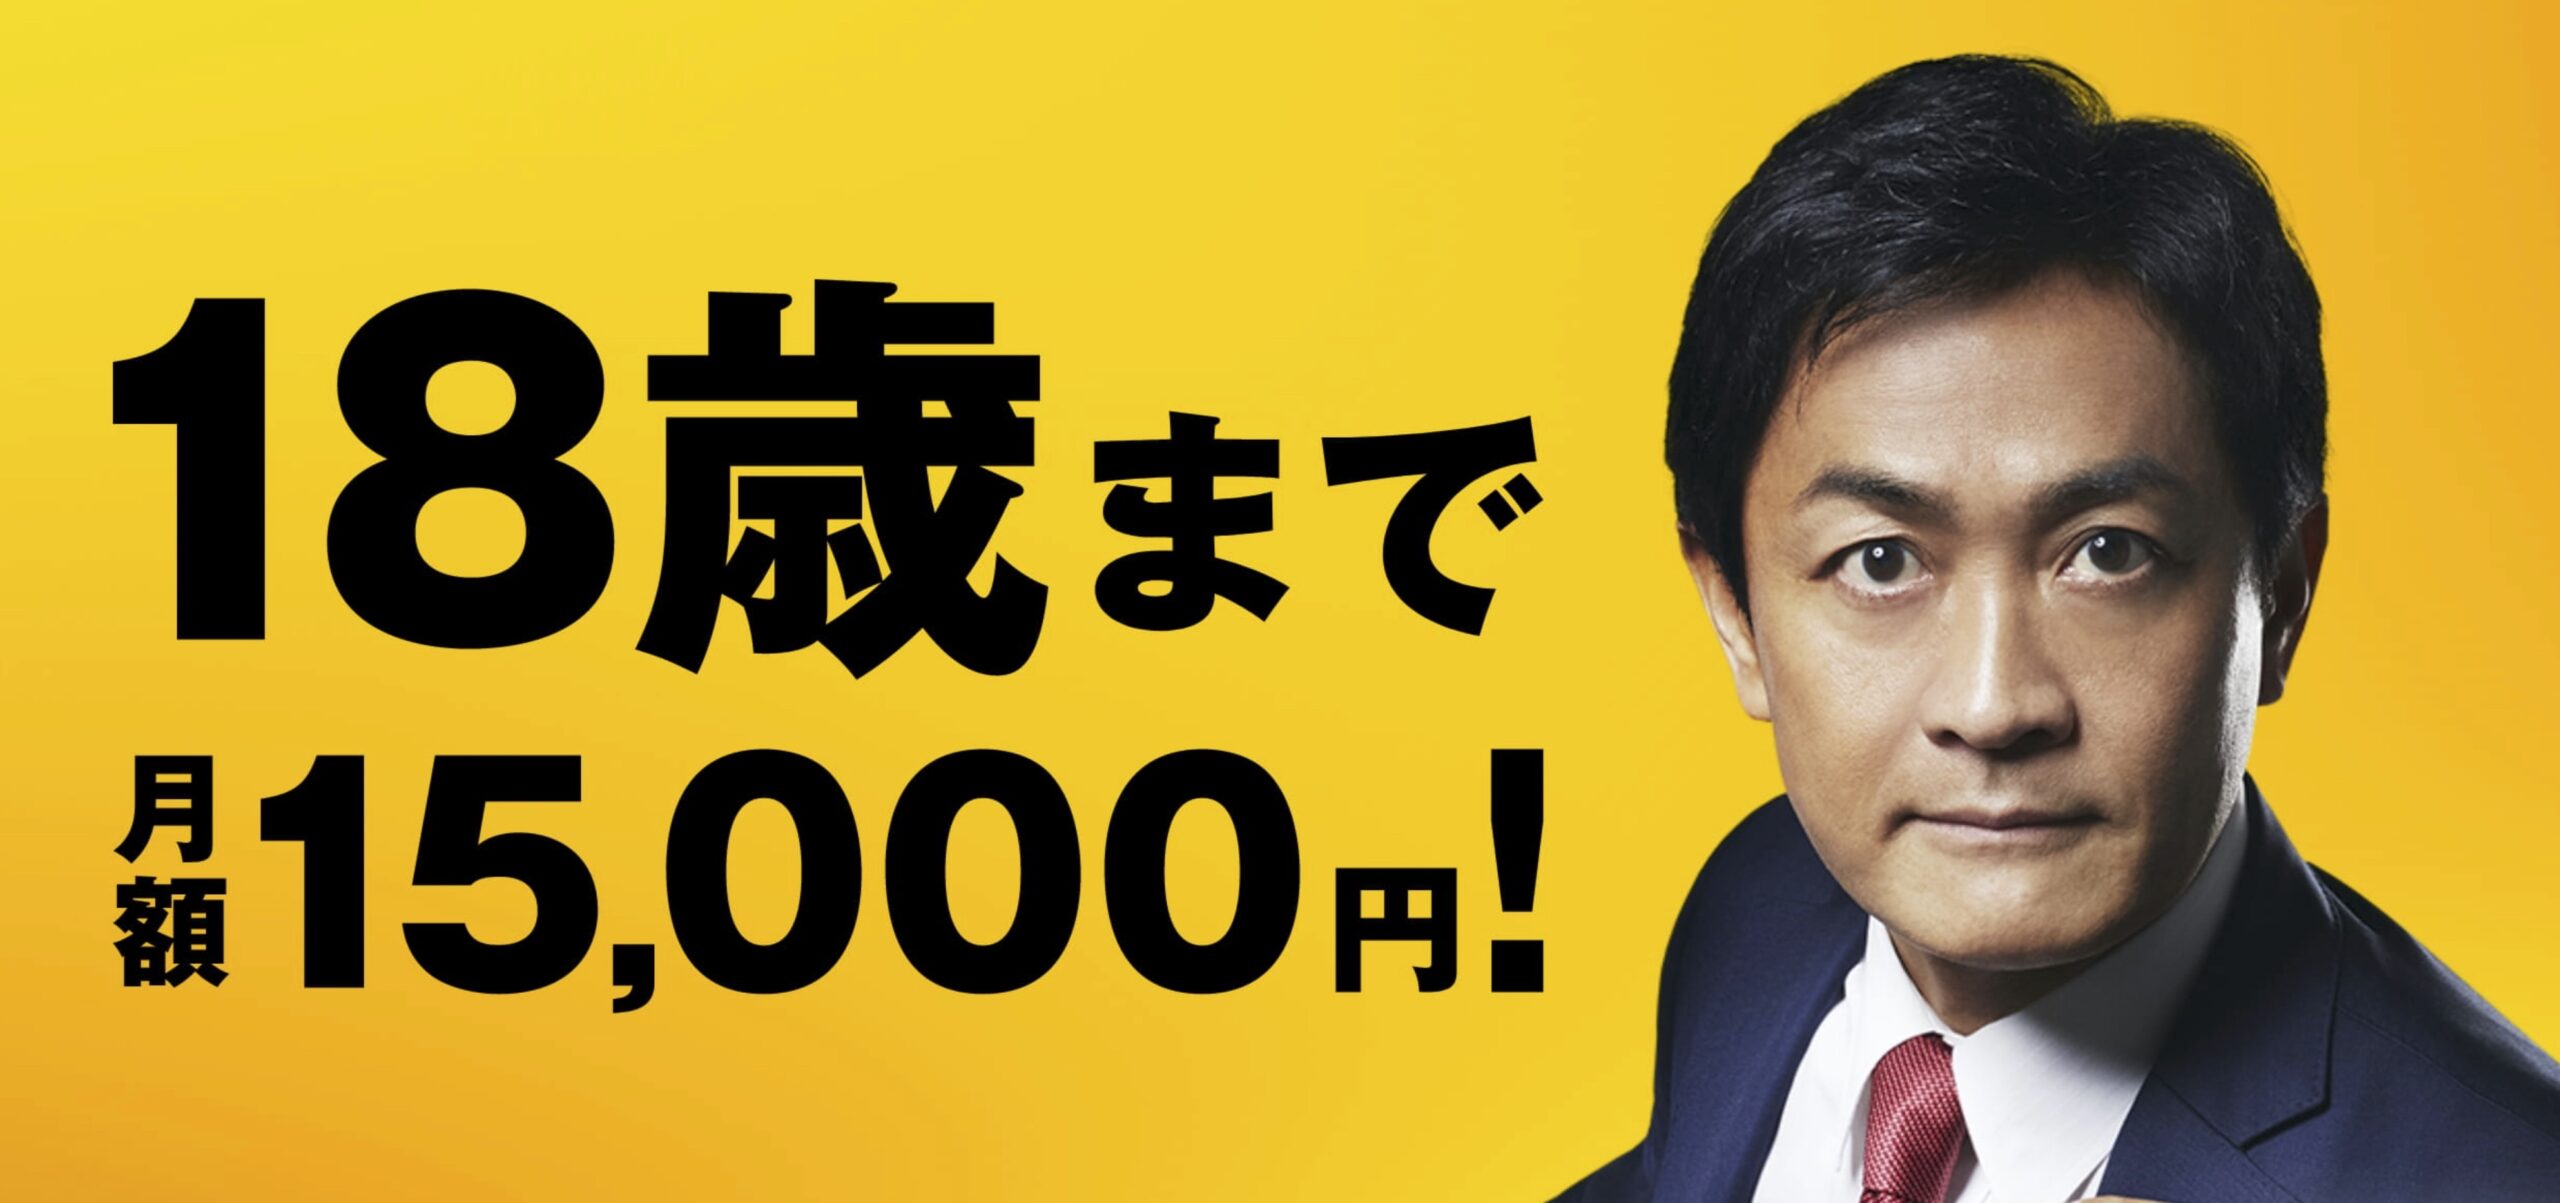 Diese Partei fordert: Kindergeld bis 18, und zwar 15,000 yen pro Monat